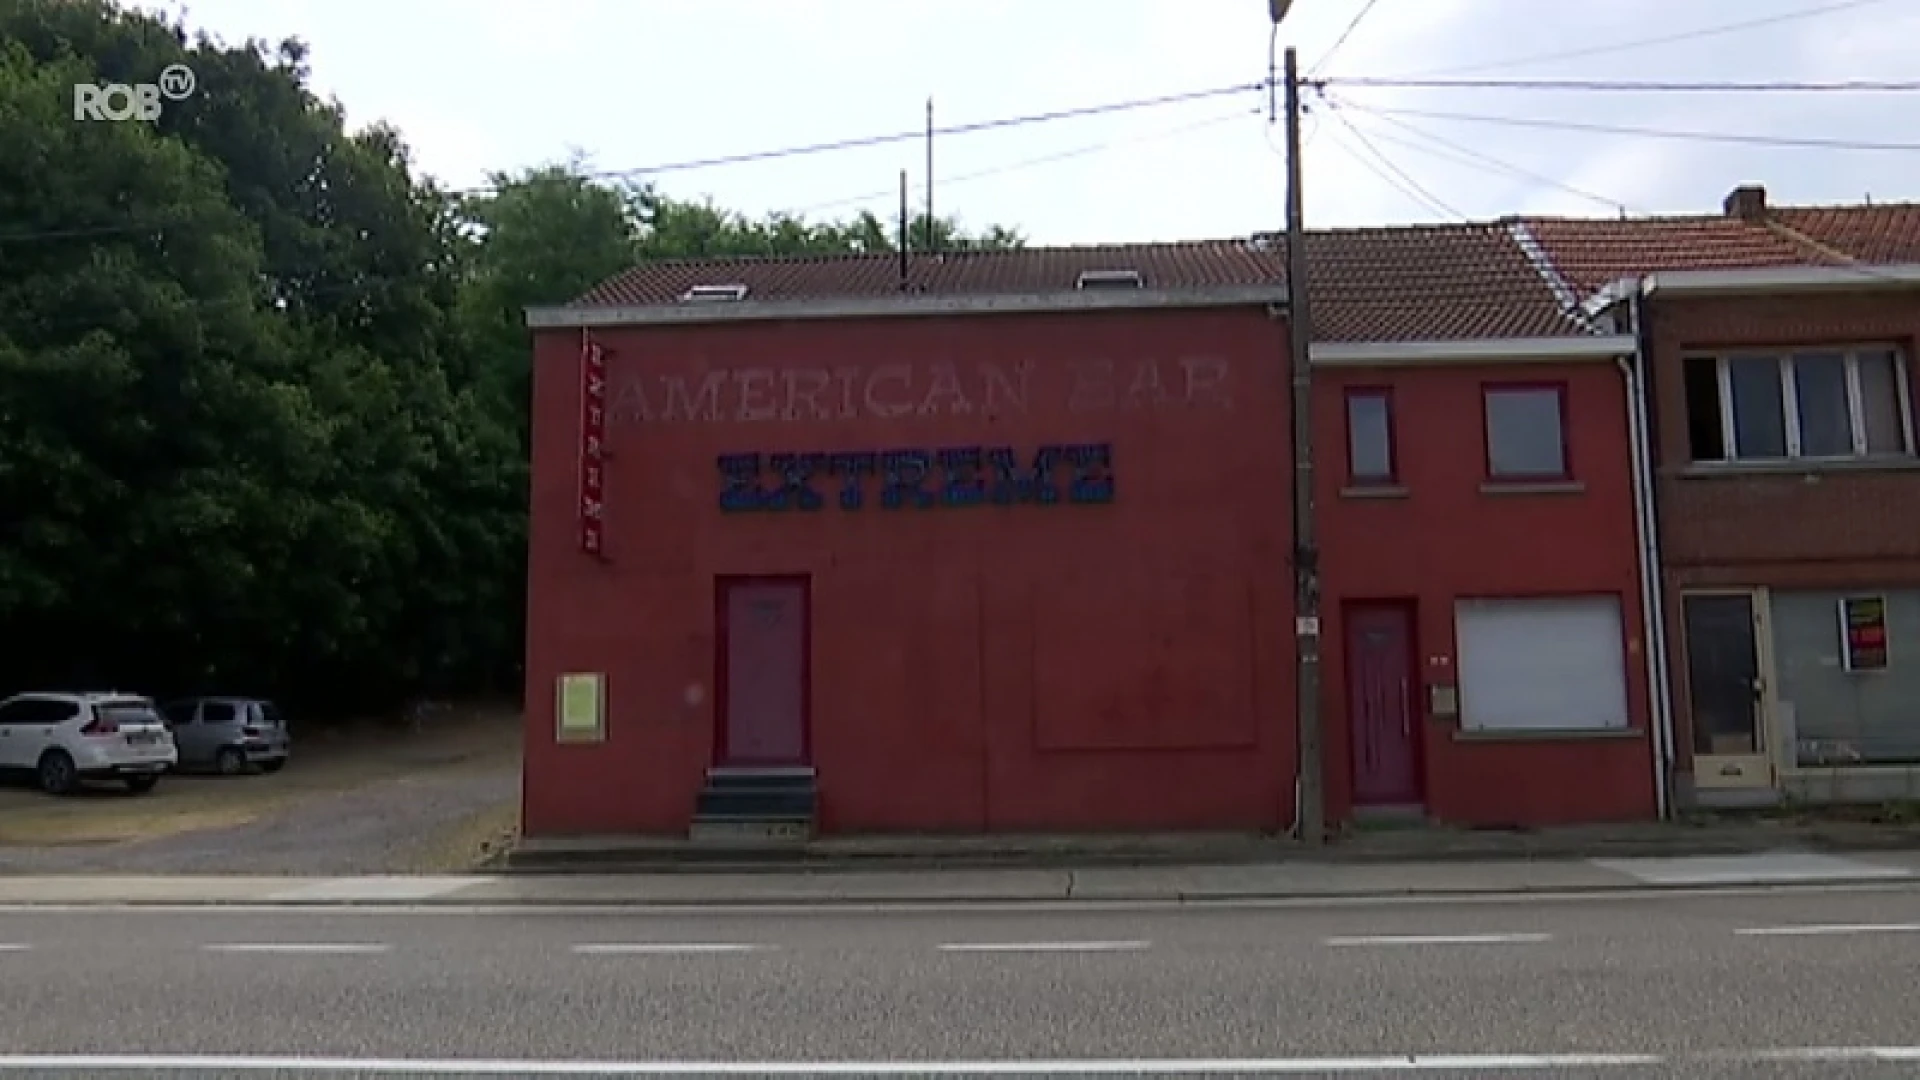 Beruchte American Bar Extreme in Aarschot gaat half augustus weer open, eerst nog personeel zoeken